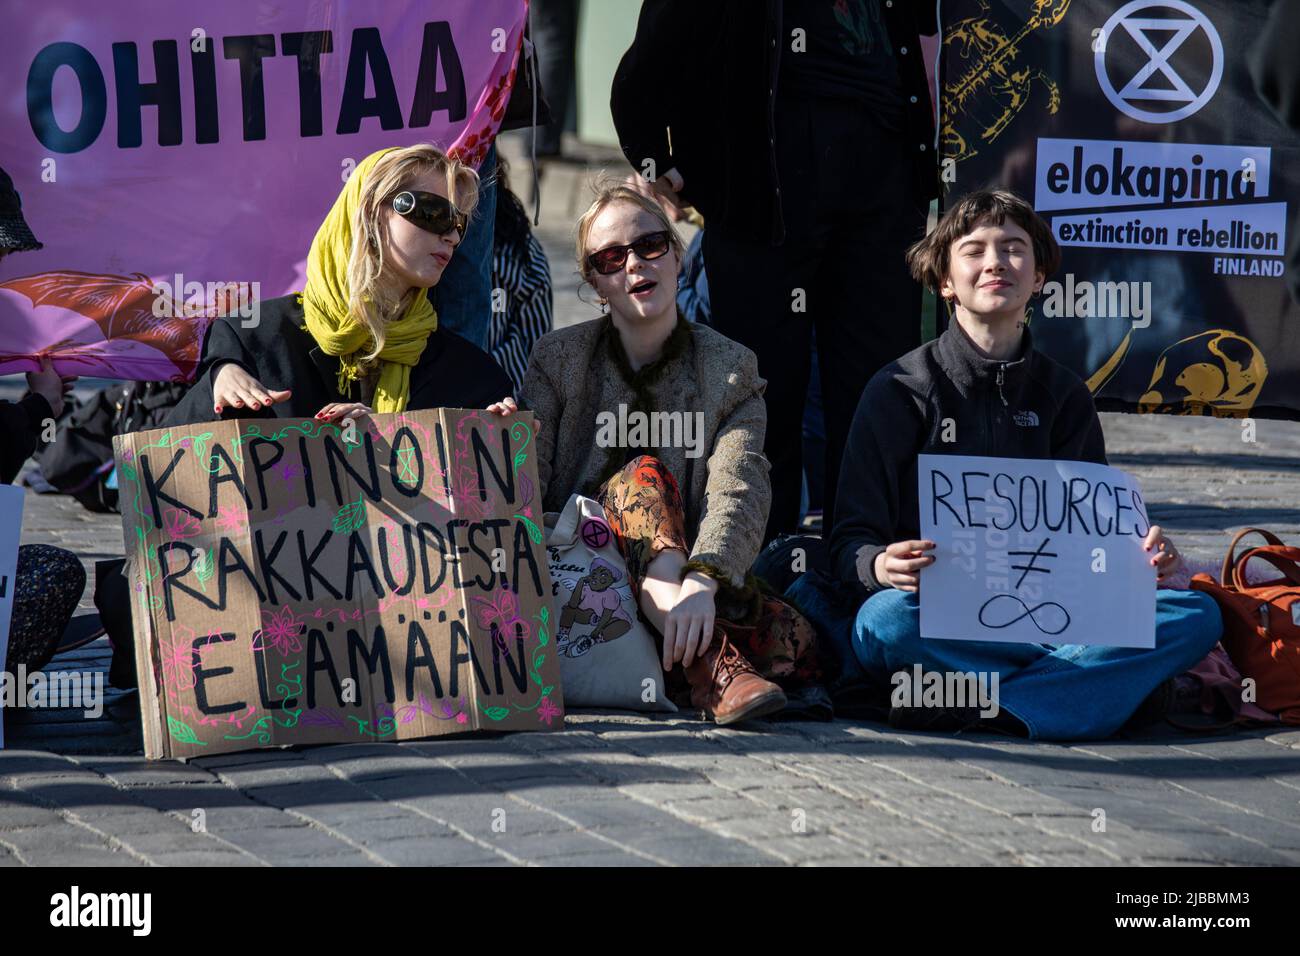 Kapinoin rakkaudesta elämään. Young women with hand-written signs at Elokapina overconsumption protest blocking Mannerheimintie in Helsinki, Finland. Stock Photo